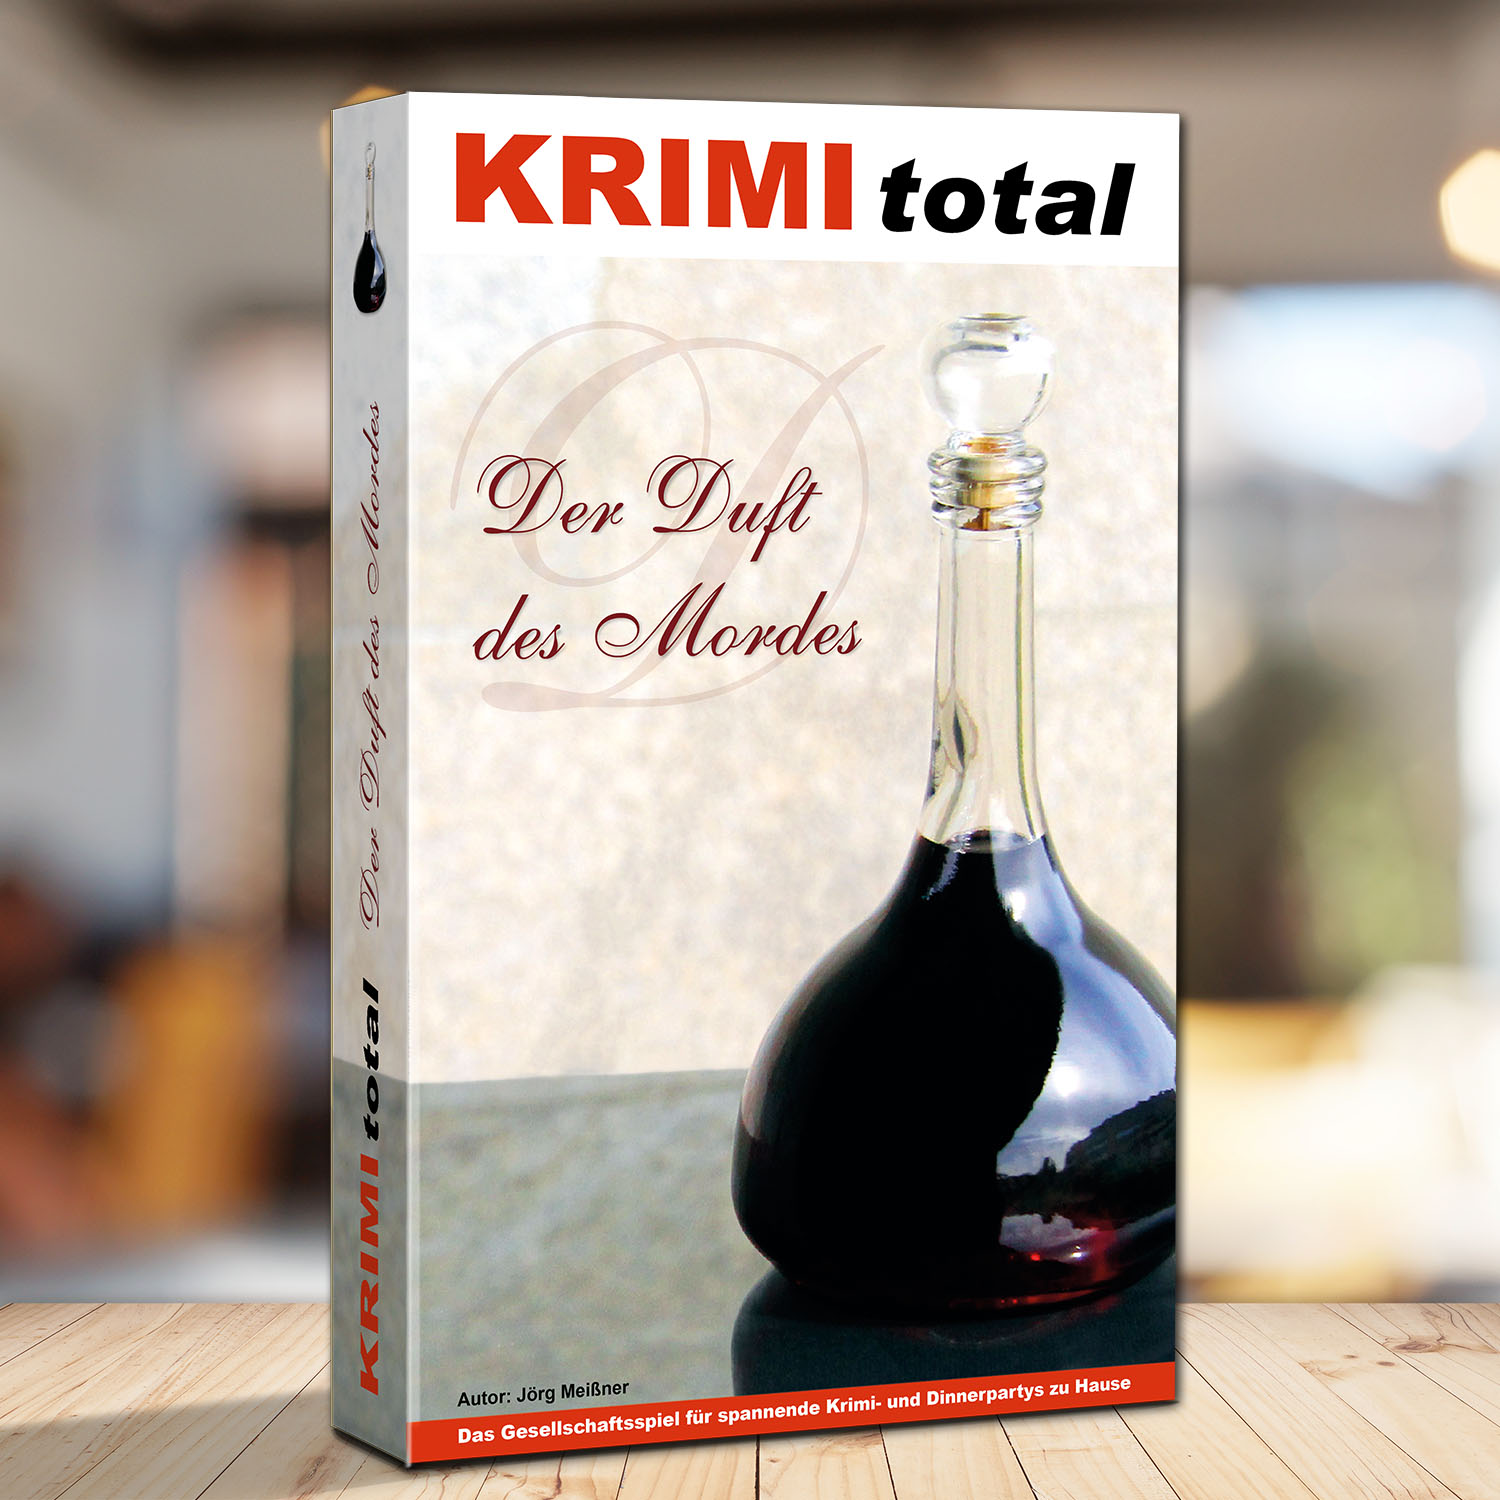 Abbildung eines Spielkartons des Krimispiels "KRIMI total - Der Duft des Mordes"